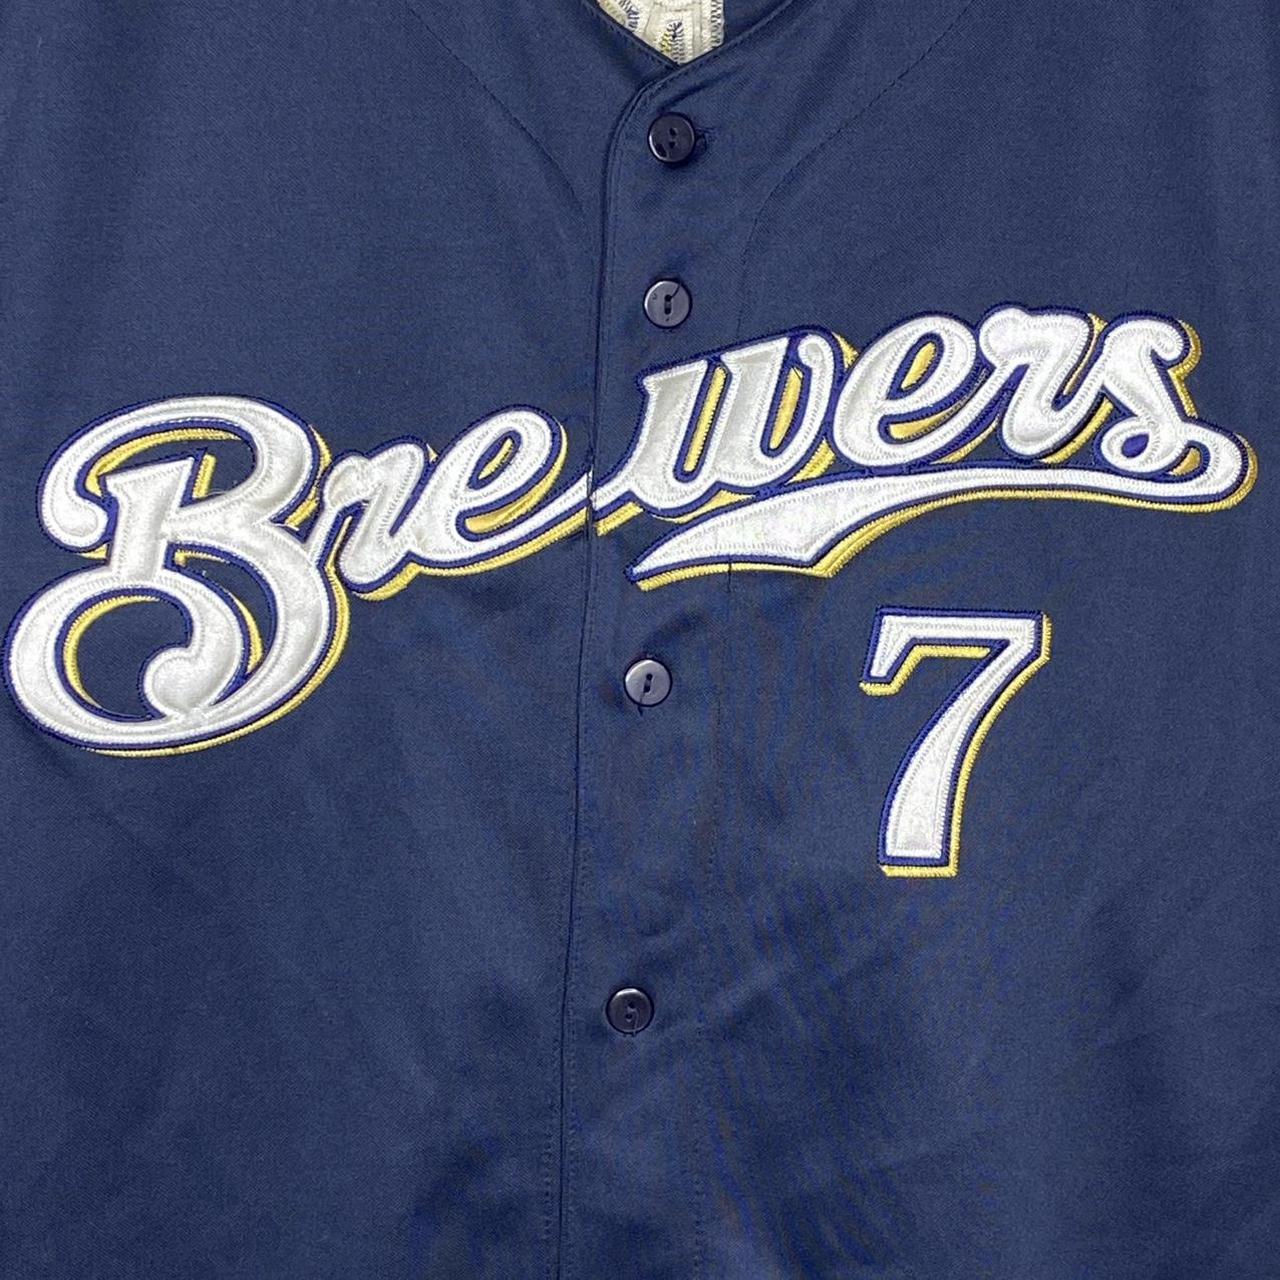 Vintage 90s Rawlings Milwaukee Brewers baseball - Depop